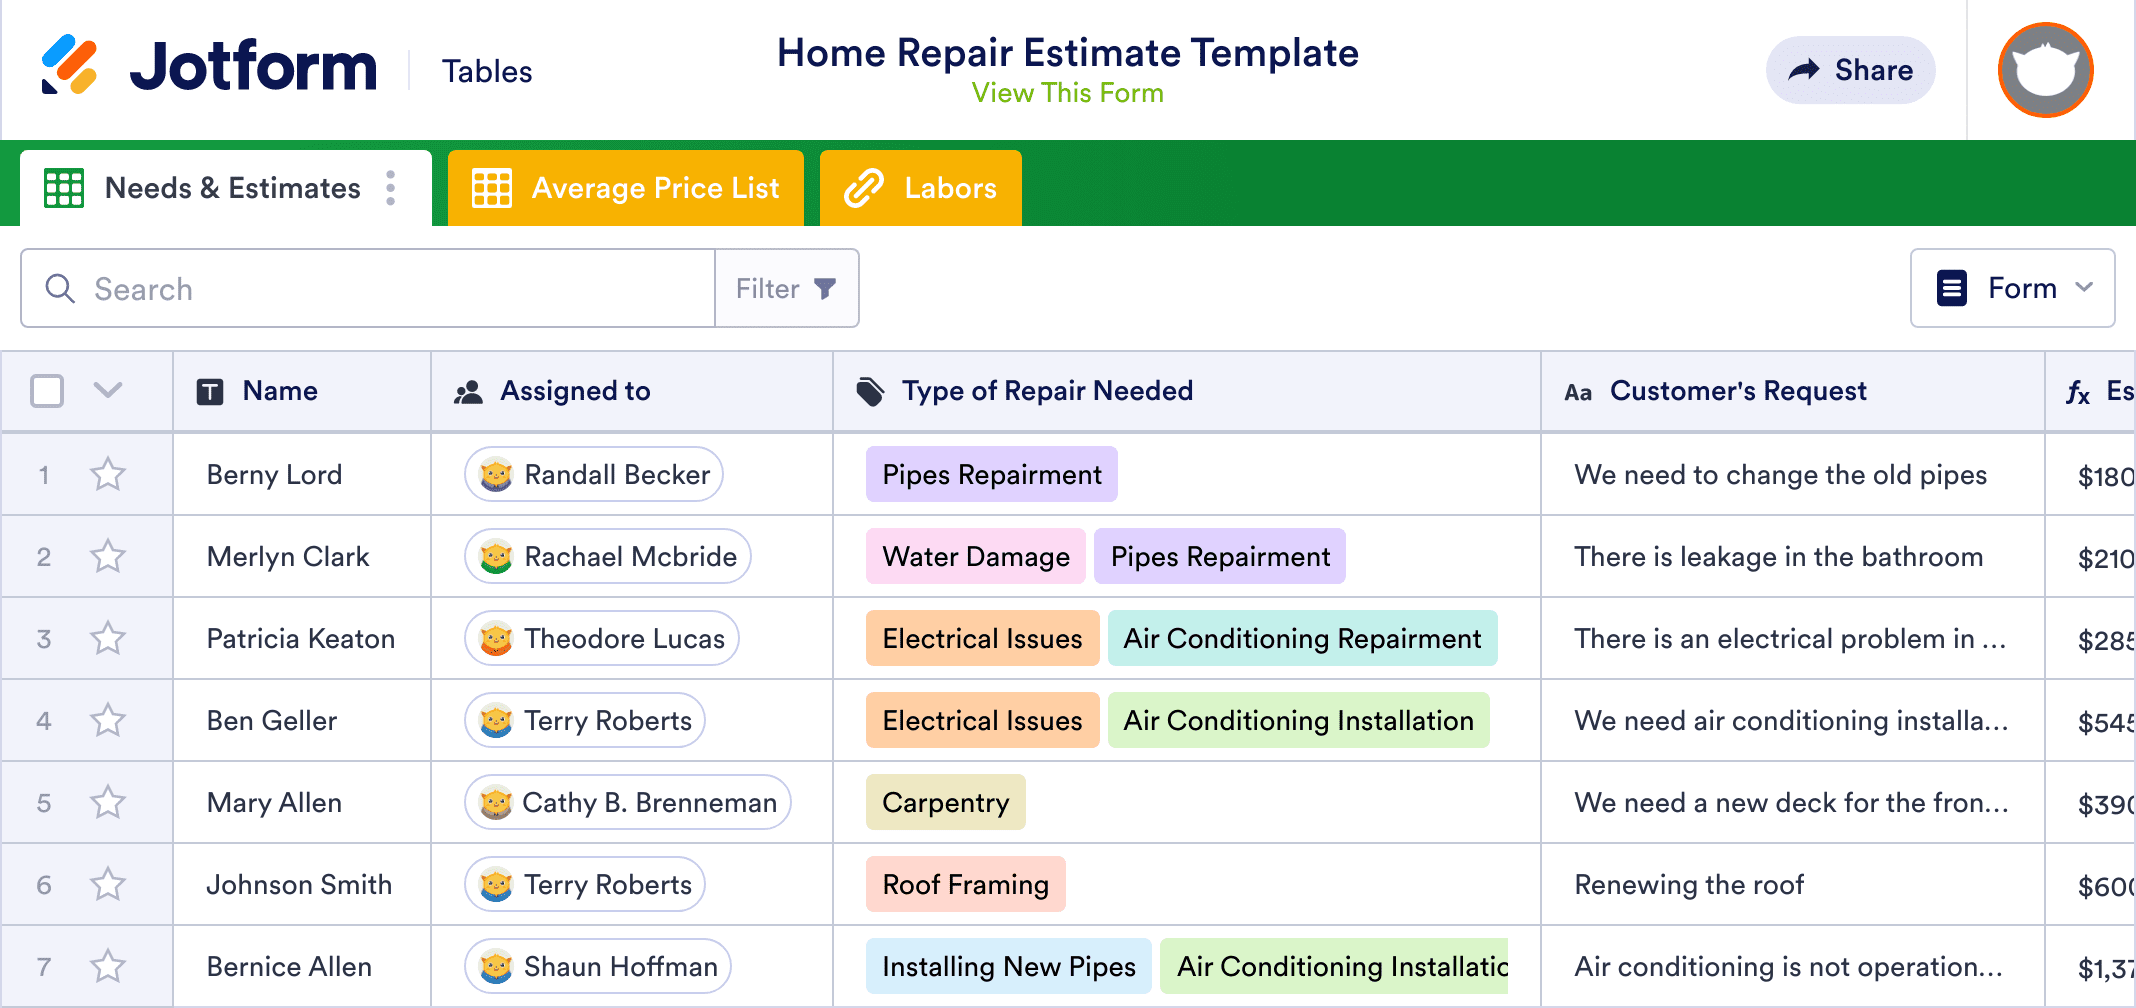 Home Repair Estimate Template